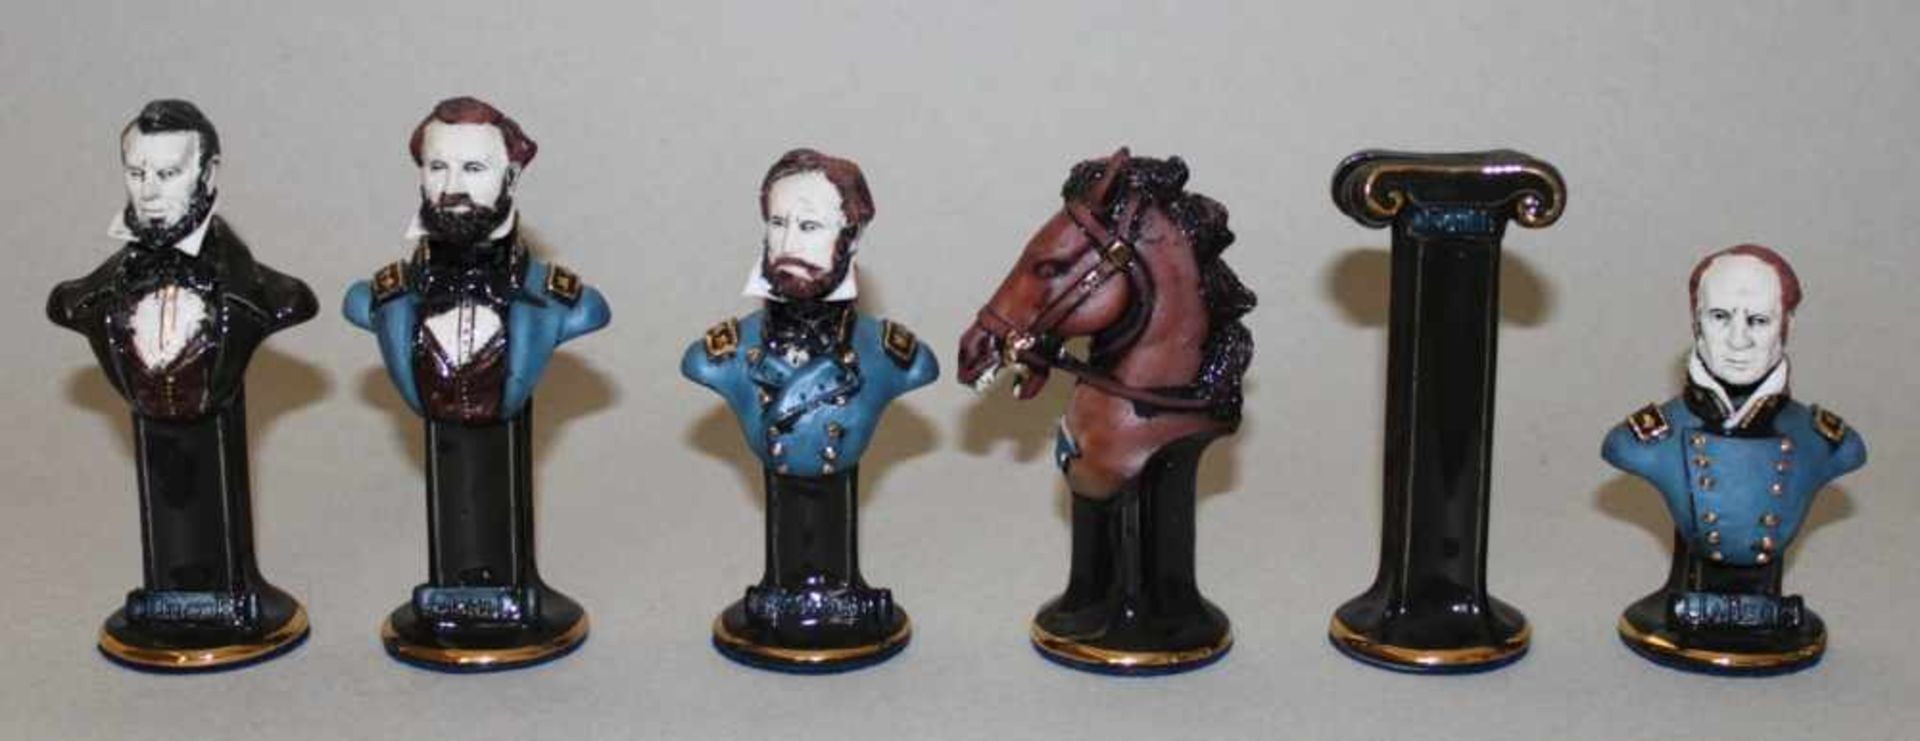 Amerika. USA. Amerikanischer Bürgerkrieg.Schachfiguren aus Keramik. Eine Partei in blauen Uniformen, - Bild 3 aus 3